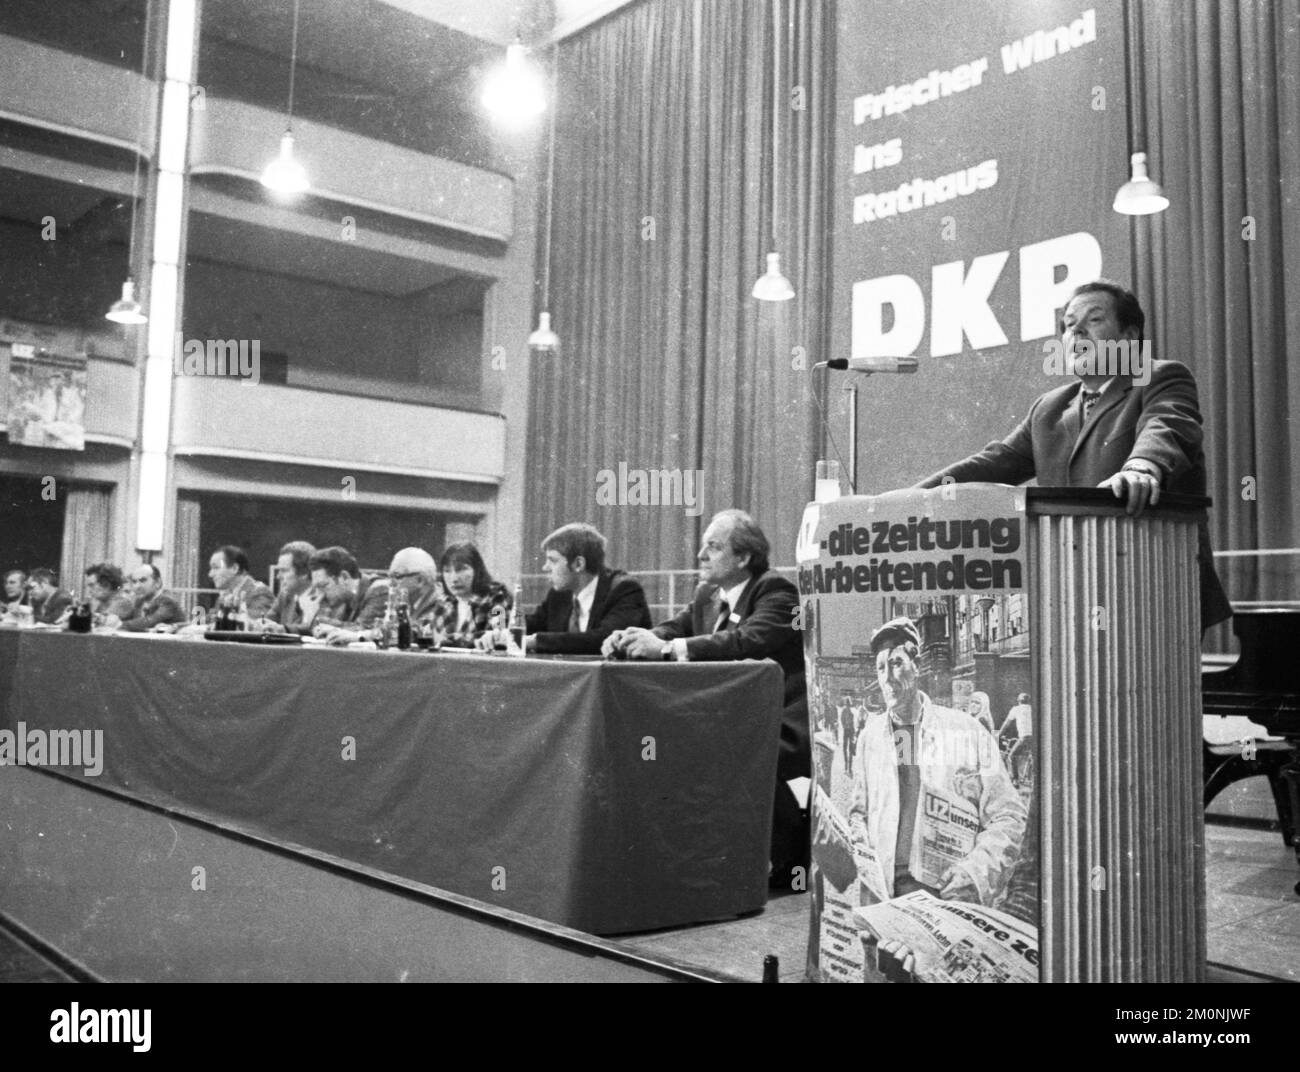 Der DKP widmete am 23. März 1974 in Bottrop, wo der DKP auch im stadtrat vertreten ist, eine Konferenz zur lokalen Politik.Herbert Mies im Stockfoto